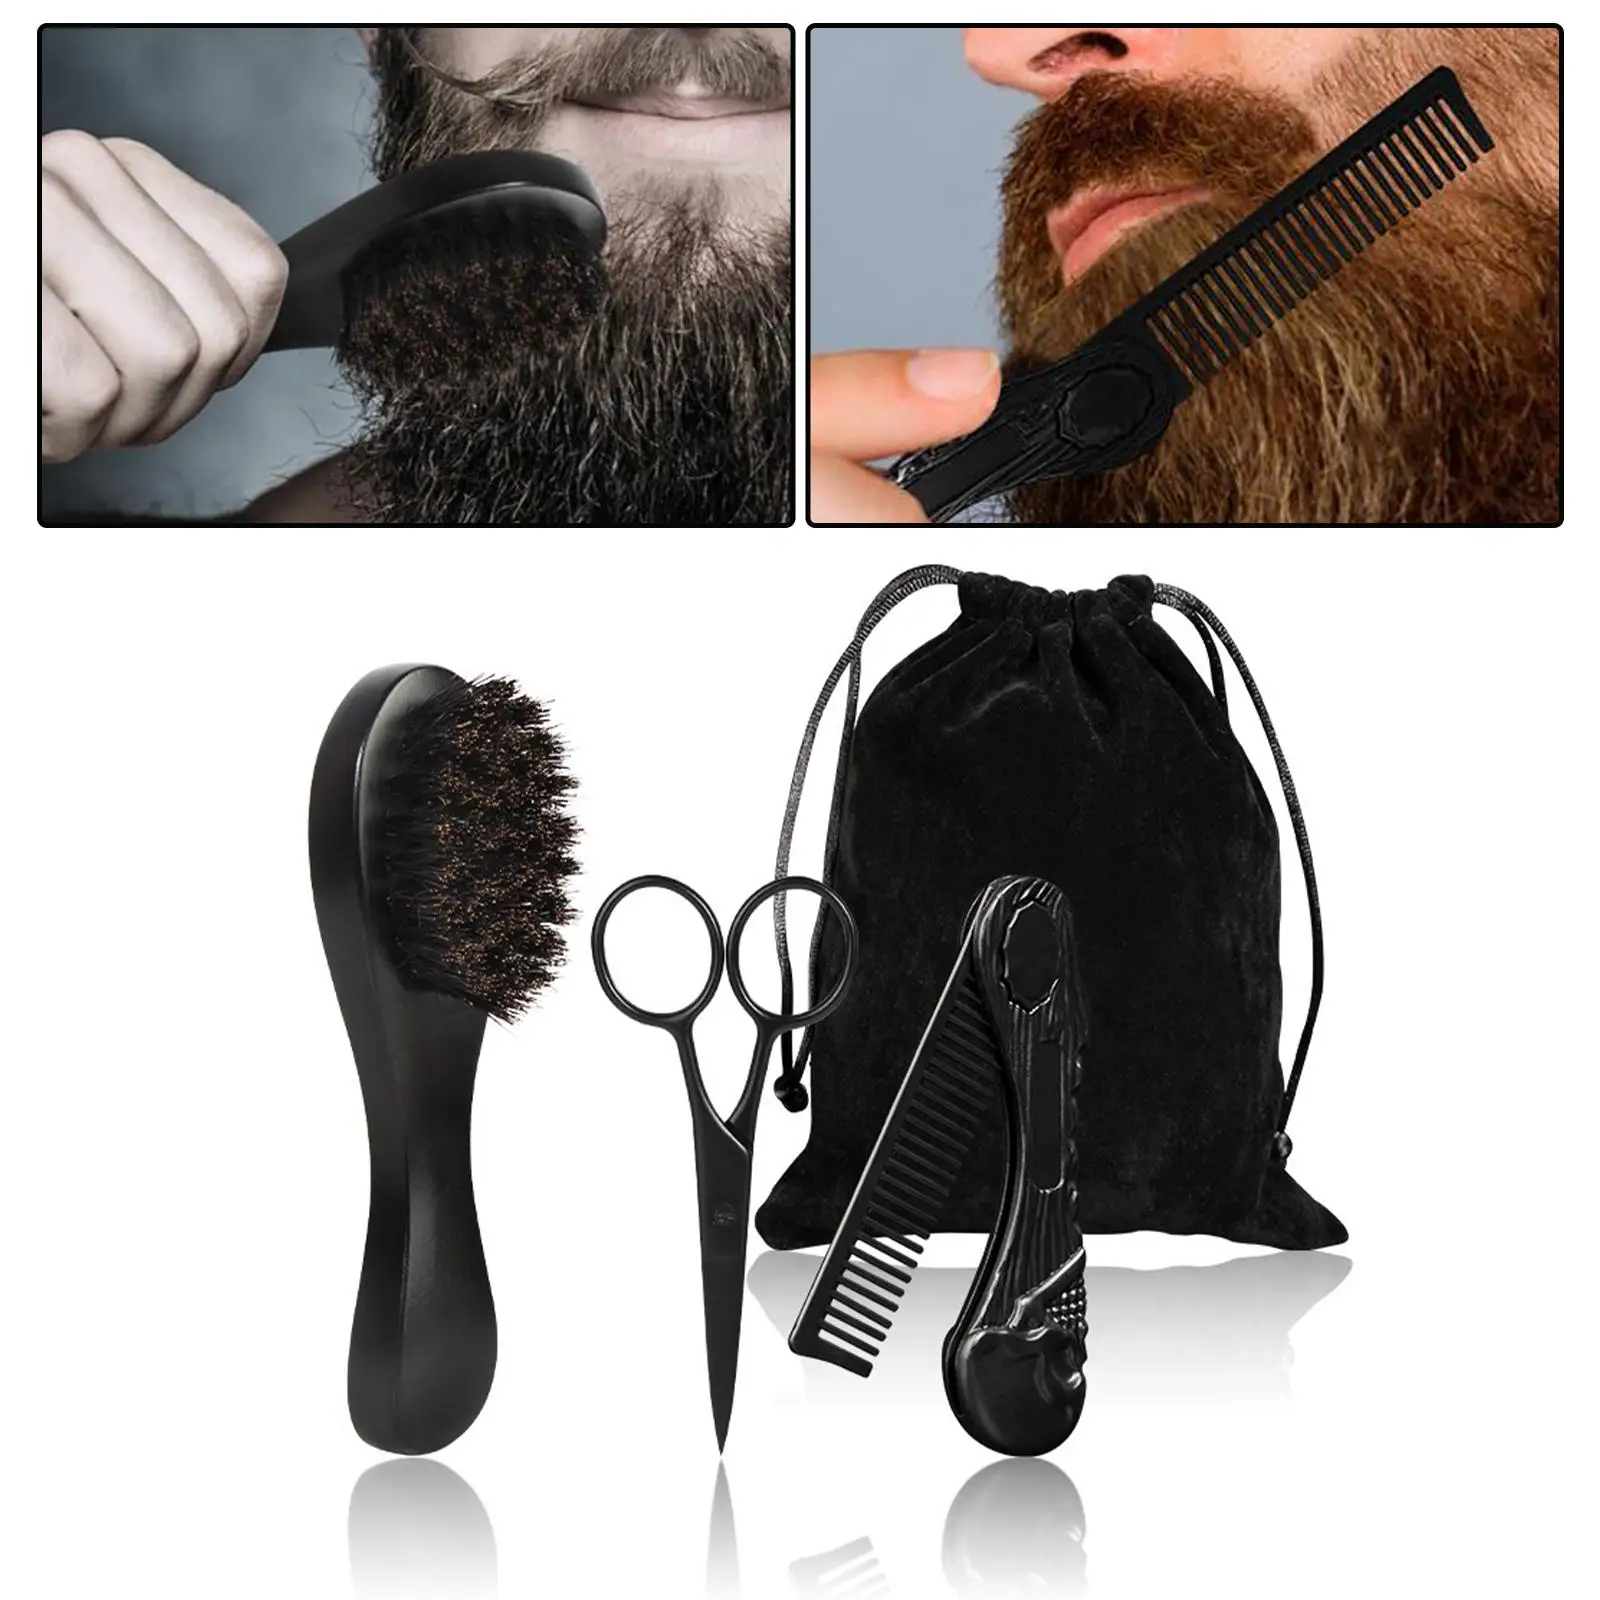 3Pcs Beard Care Kit Gift Wooden Pocket Comb for Home Men`s Travel Beard Grooming Kit